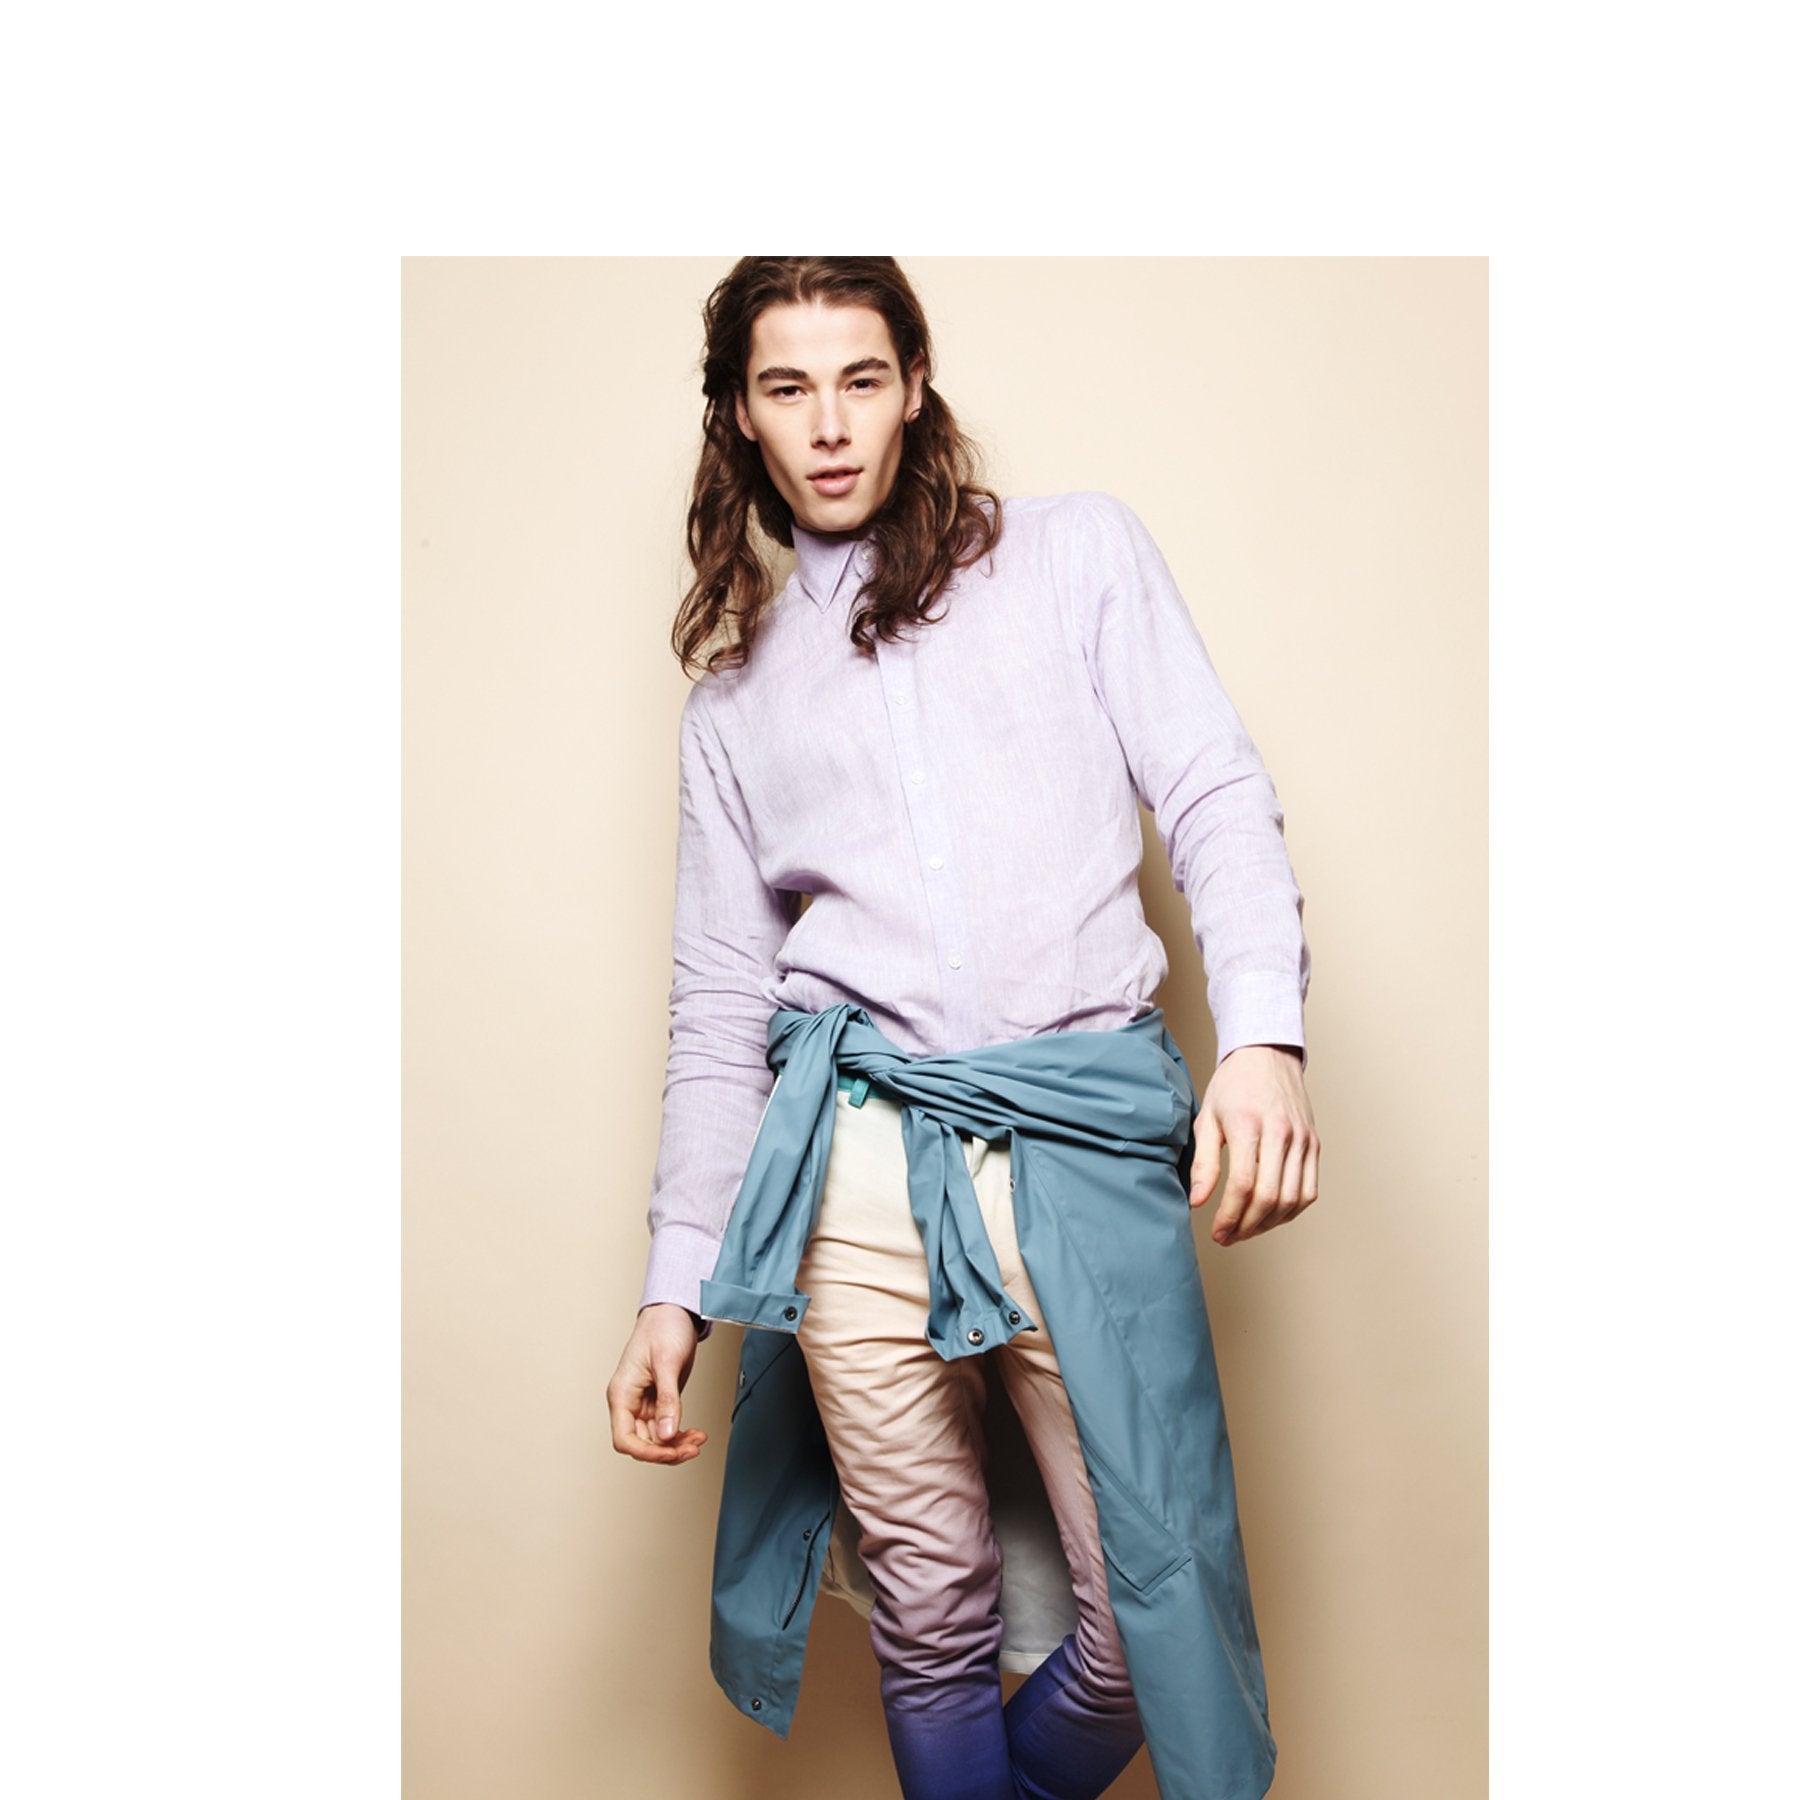 Emma Willis’ Lavender Linen shirt featured in Kaltblut Magazine - Emma Willis